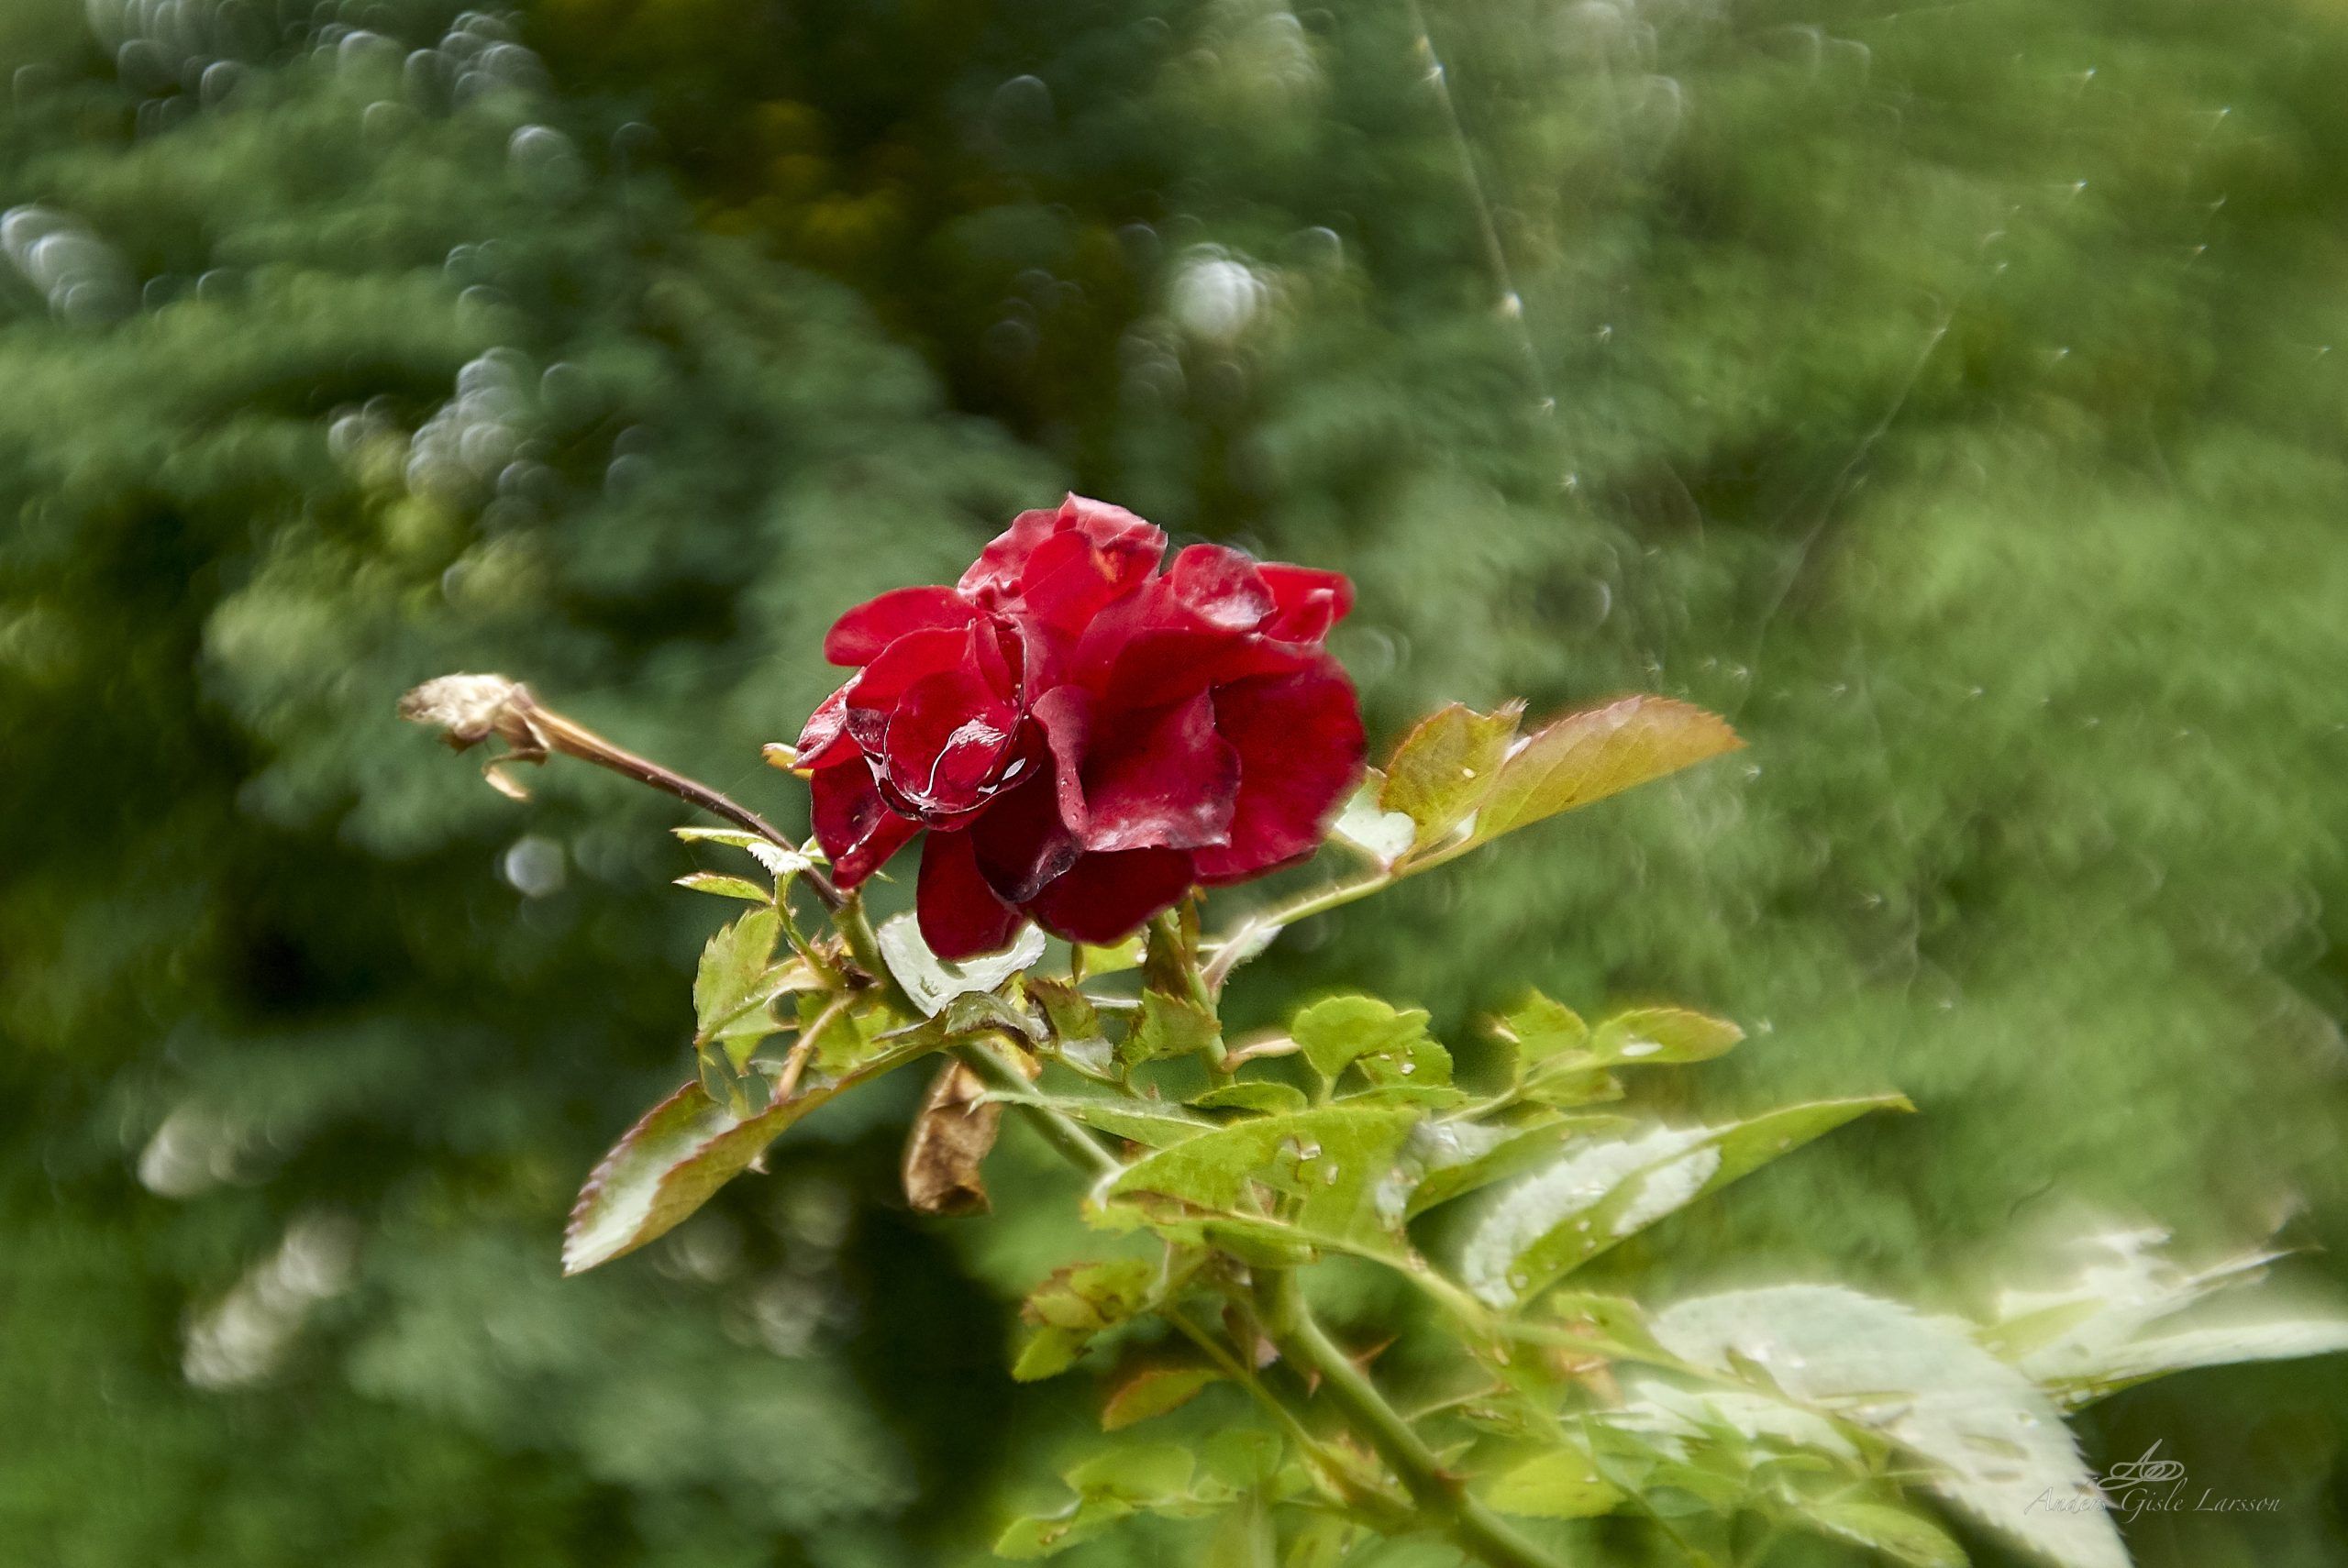 En døende rose, 243/365, Uge 35, Assentoft, Randers